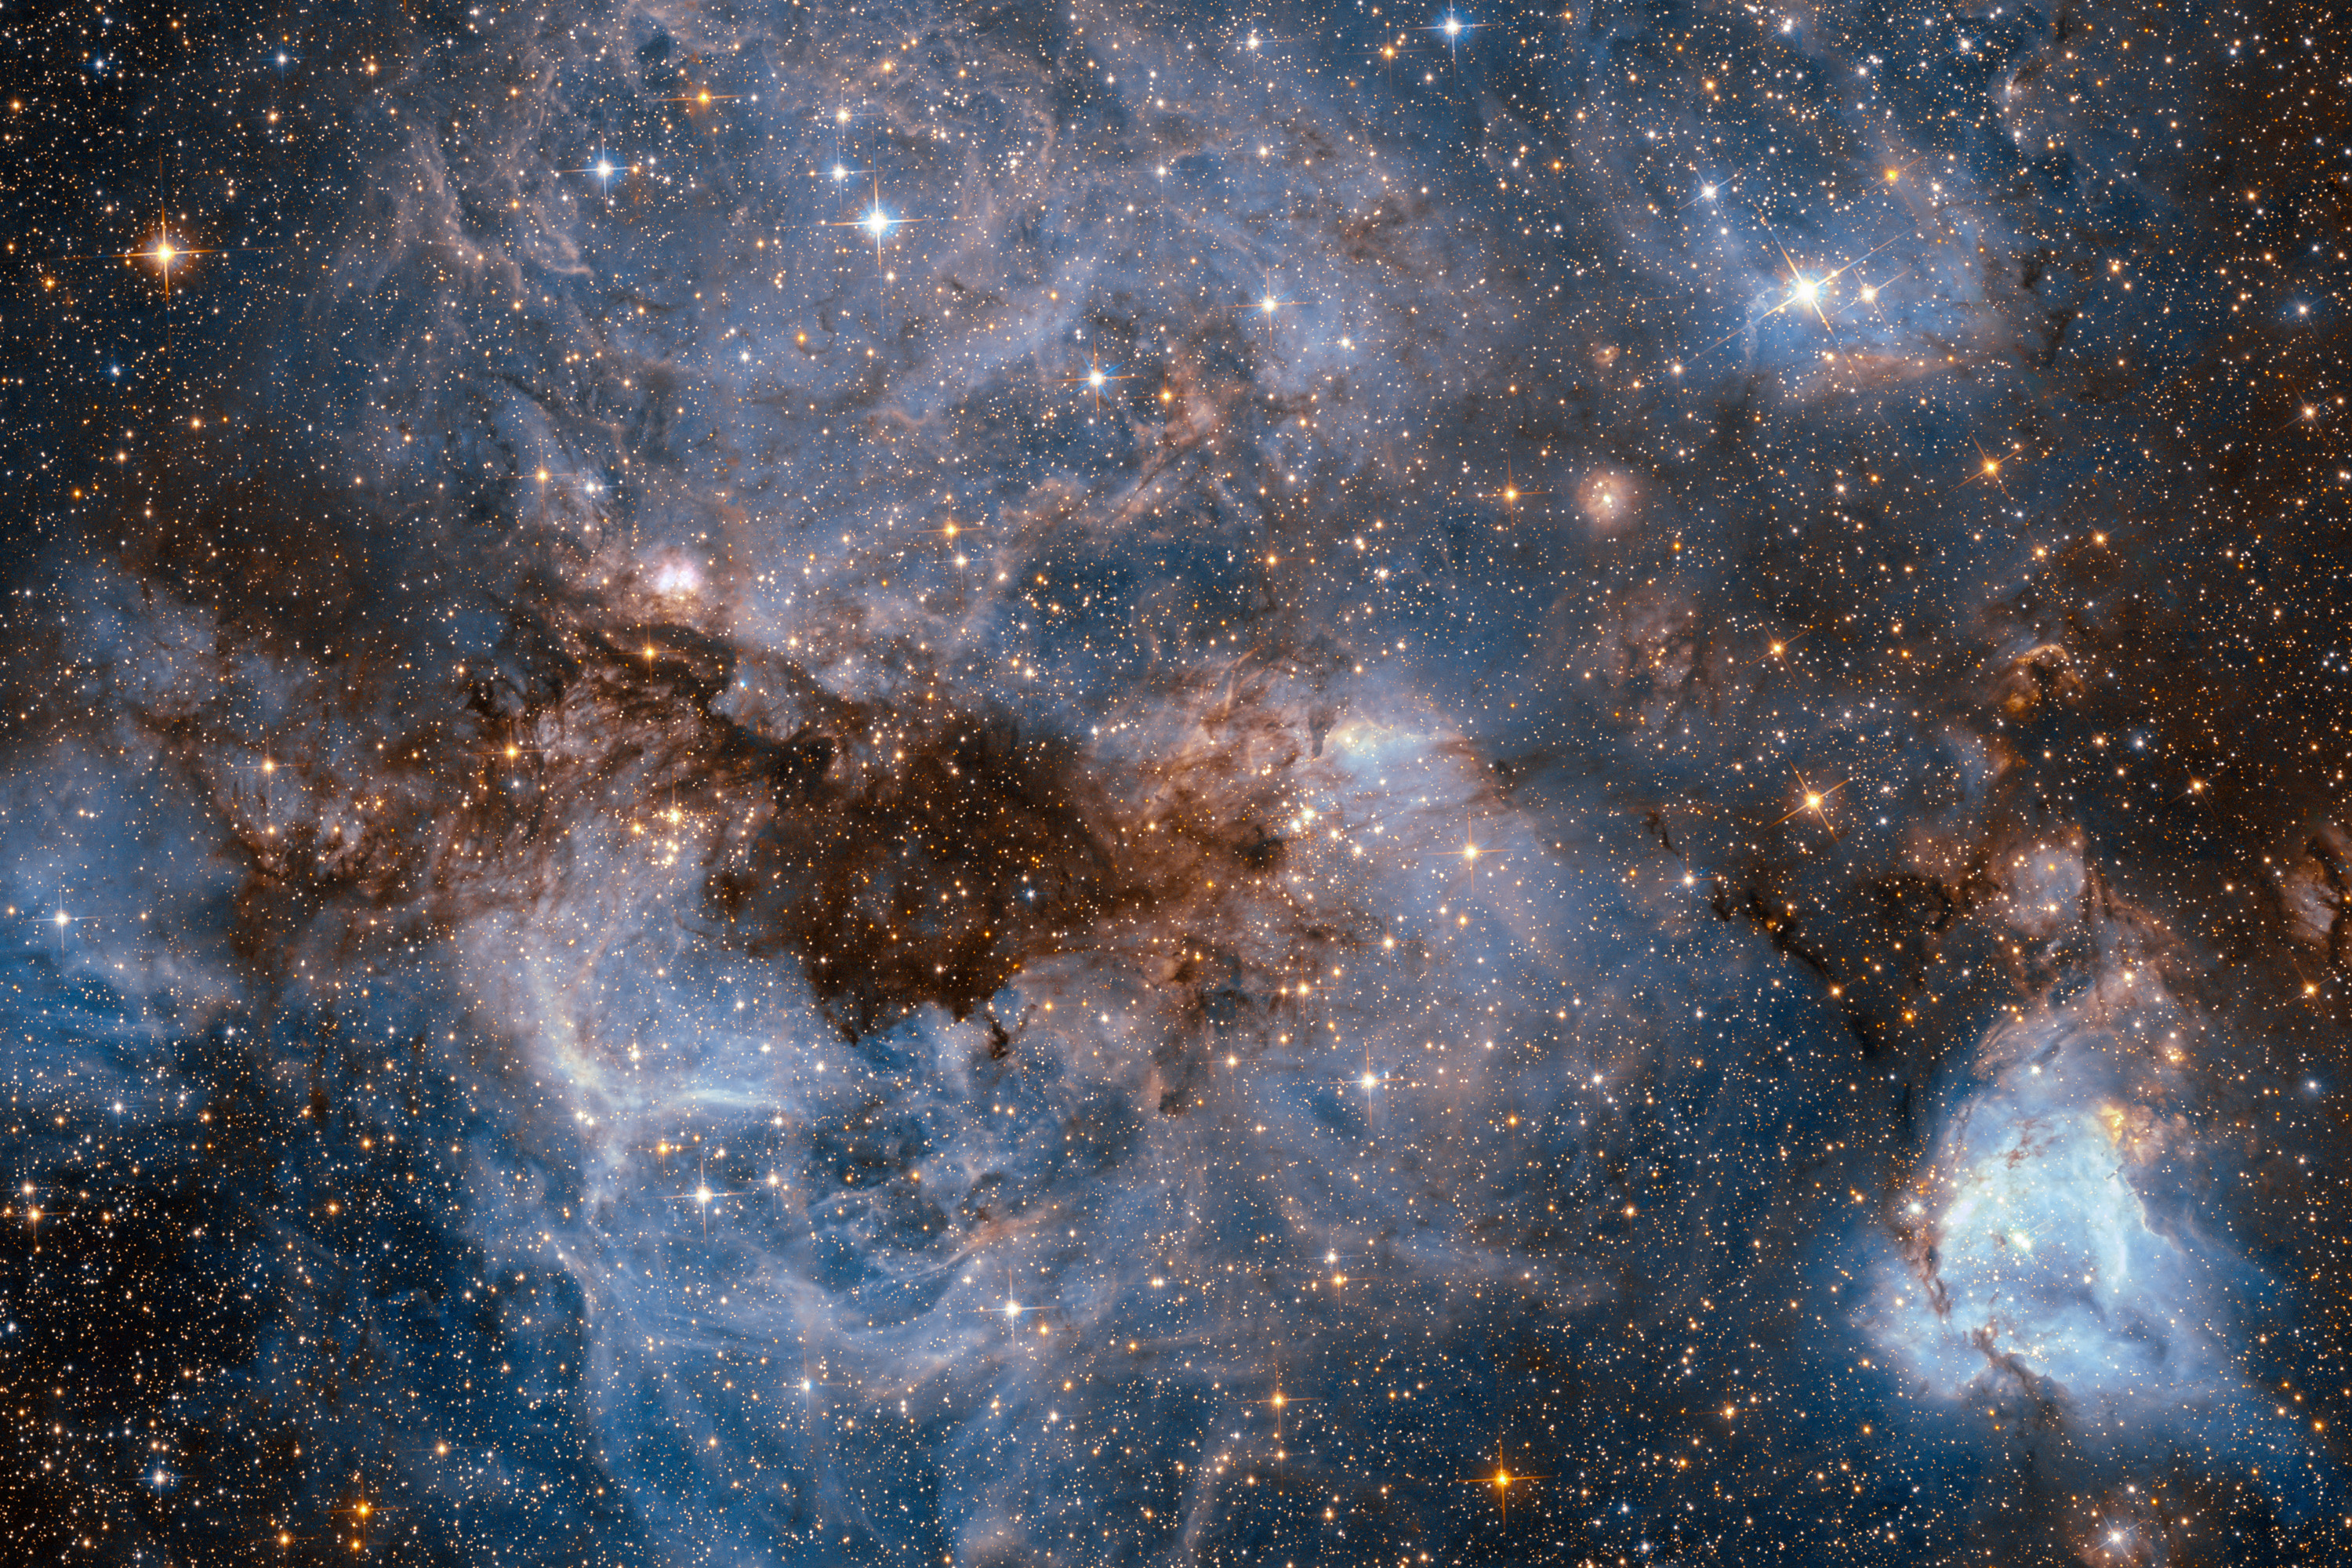 Ионизированный водород и облака пыли объекта N159 в Большом Магеллановом Облаке. Фото опубликовано на сайте НАСА. (3000x2000)